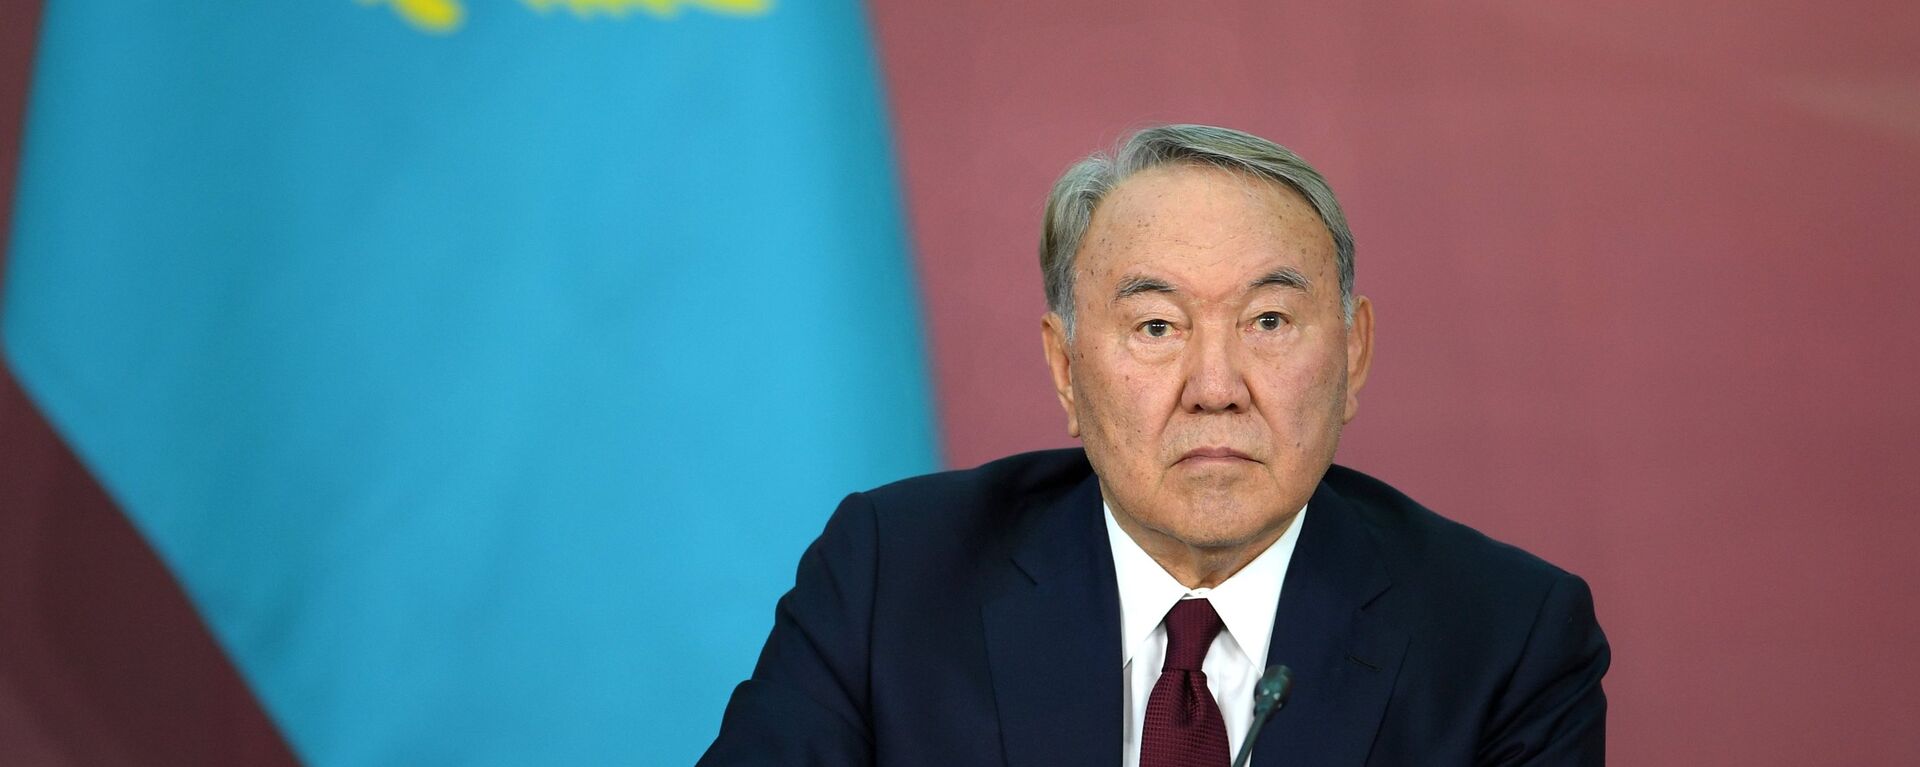 Nursultán Nazarbáev, presidente de Kazajistán - Sputnik Mundo, 1920, 05.05.2022